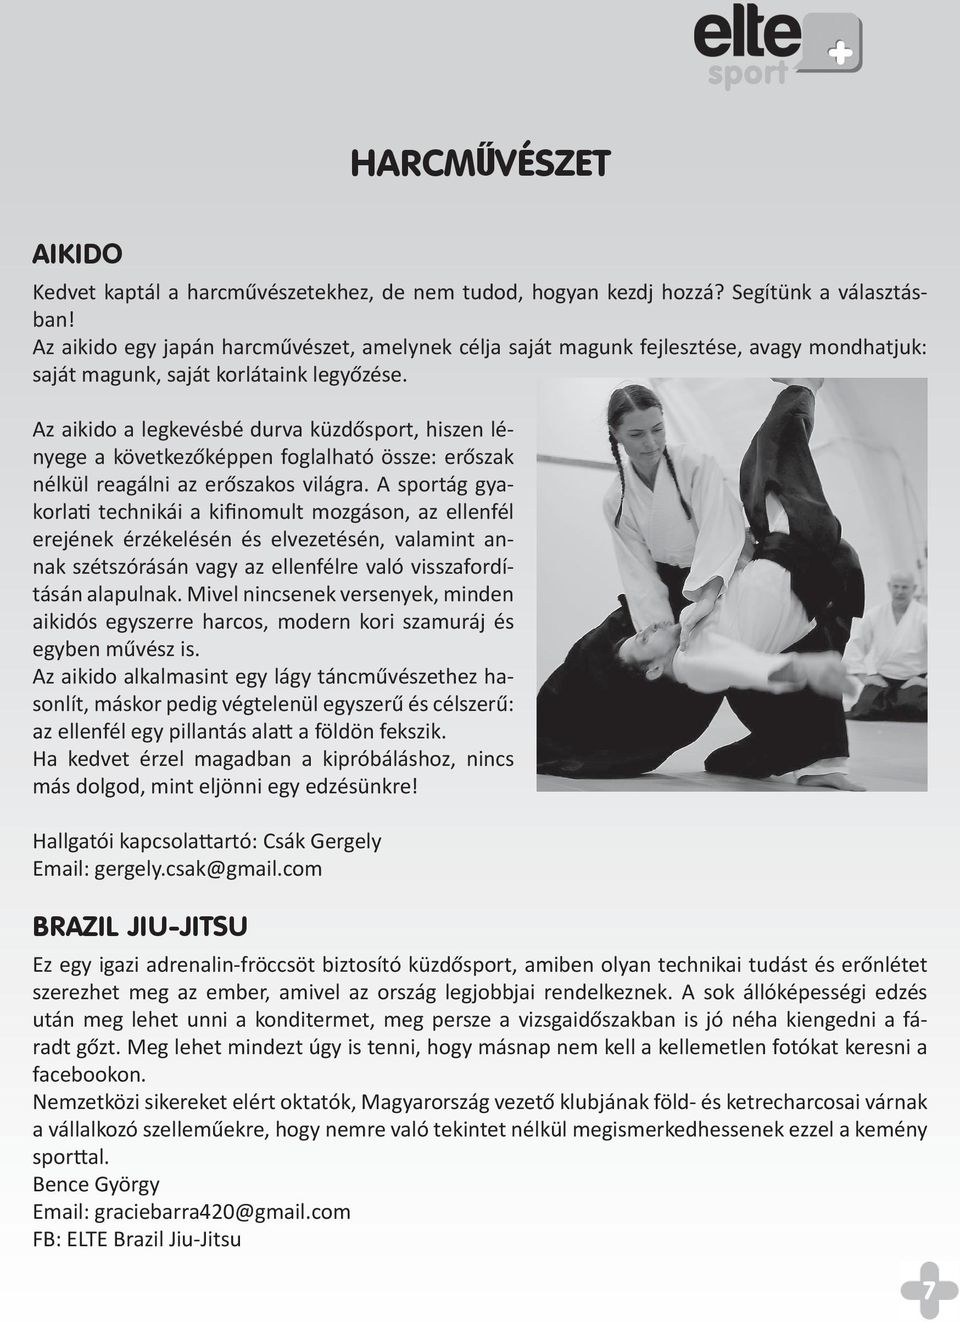 Az aikido a legkevésbé durva küzdősport, hiszen lényege a következőképpen foglalható össze: erőszak nélkül reagálni az erőszakos világra.